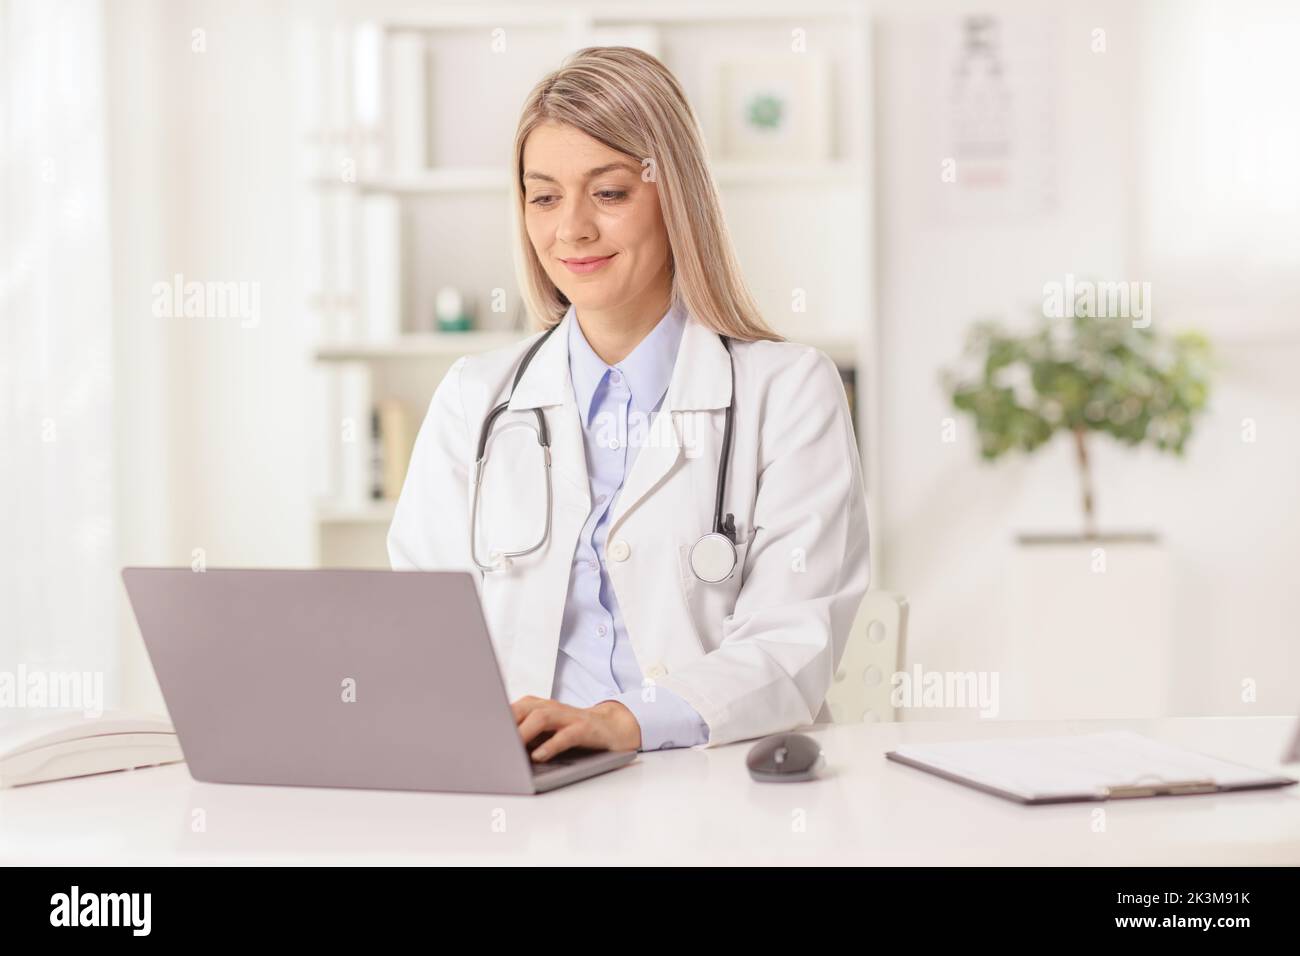 Doctora joven sentada en un consultorio y escribiendo en una computadora portátil Foto de stock